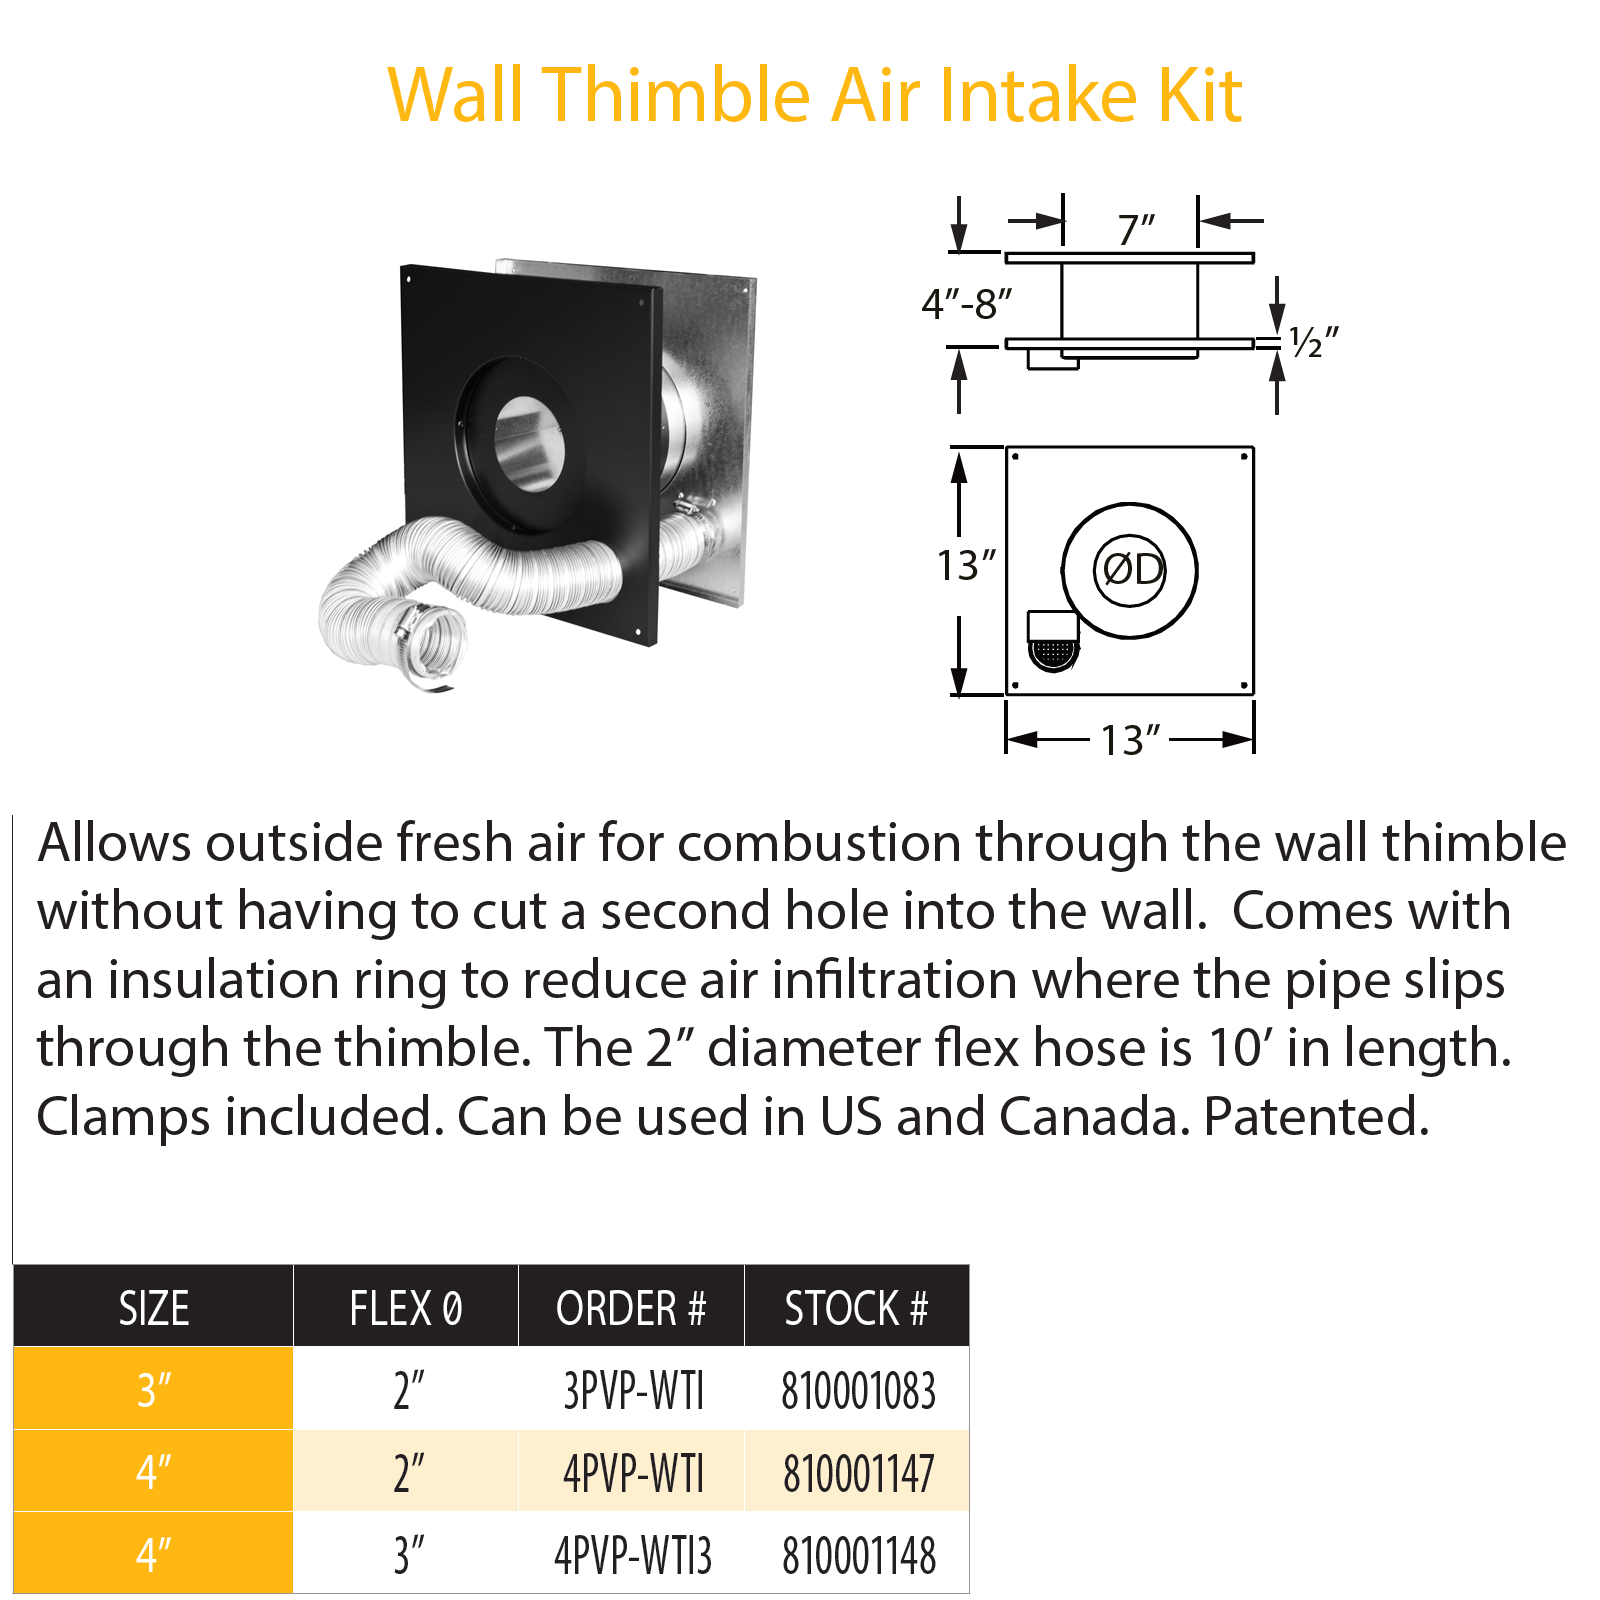 DuraVent Pellet Vent Pro 3" Wall Thimble Air Intake Kit | 3PVP-WTI